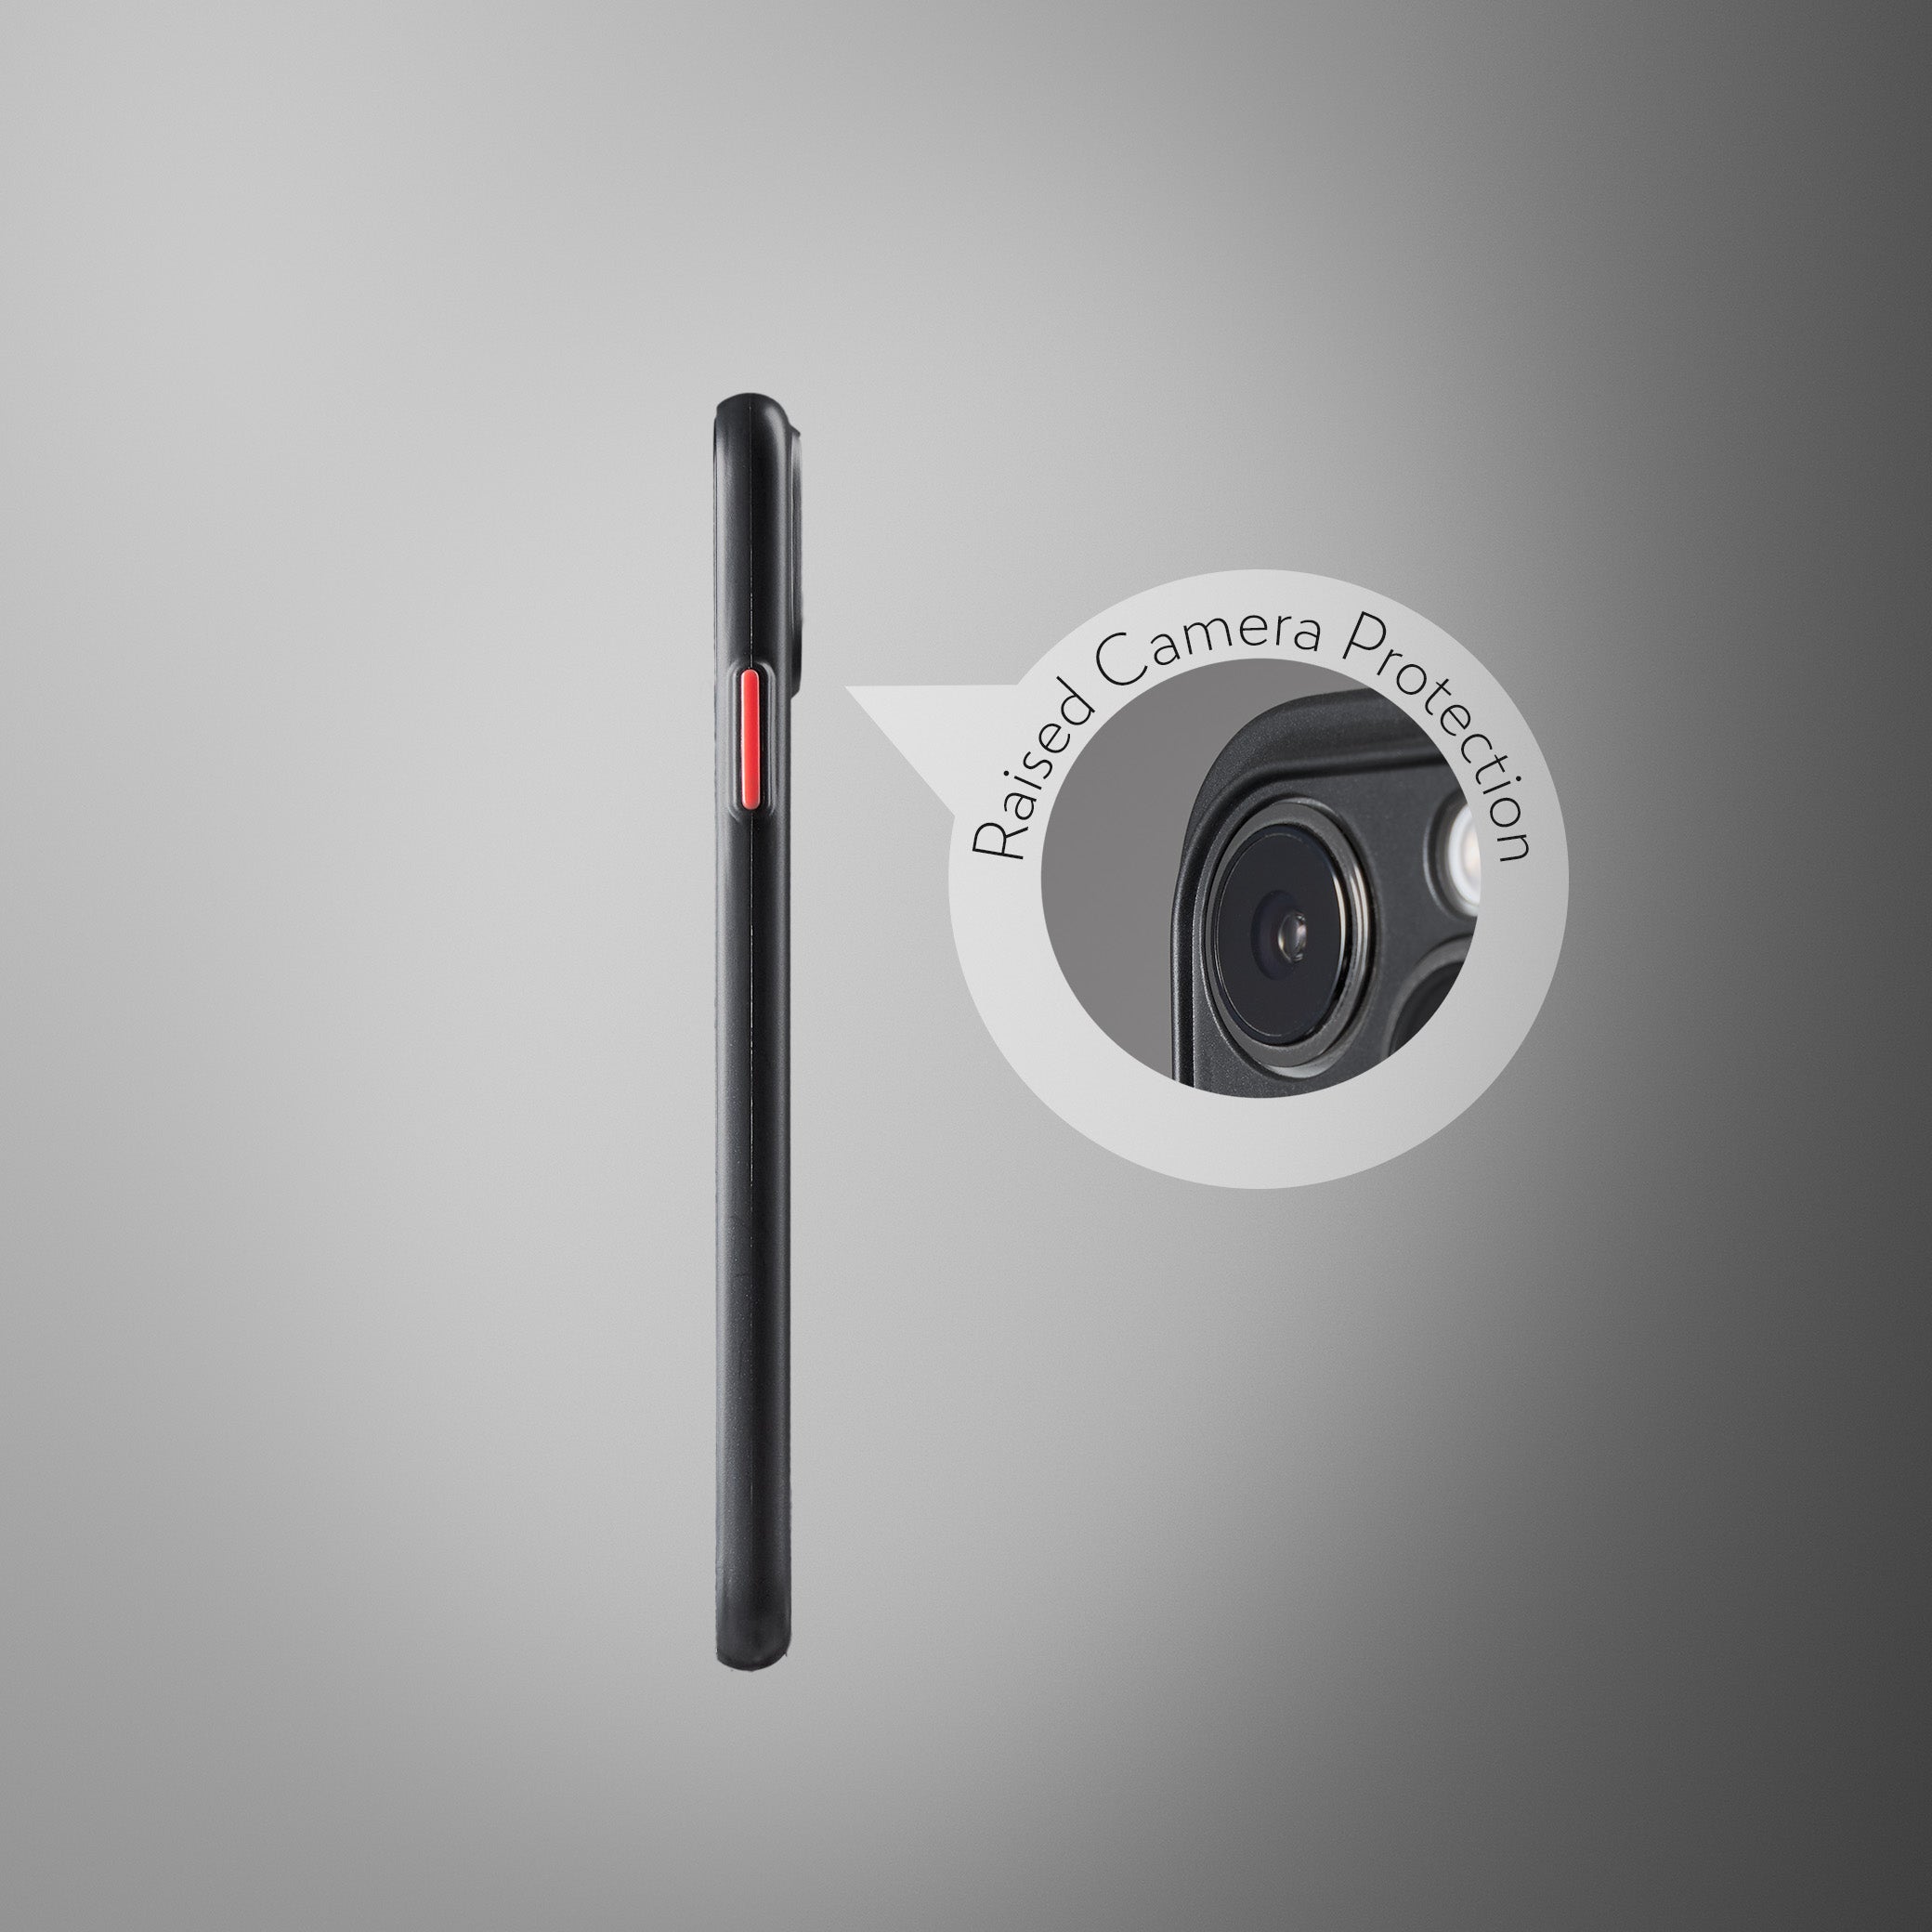 Super Slim Case 2.0 for iPhone 11 - Opaque Black